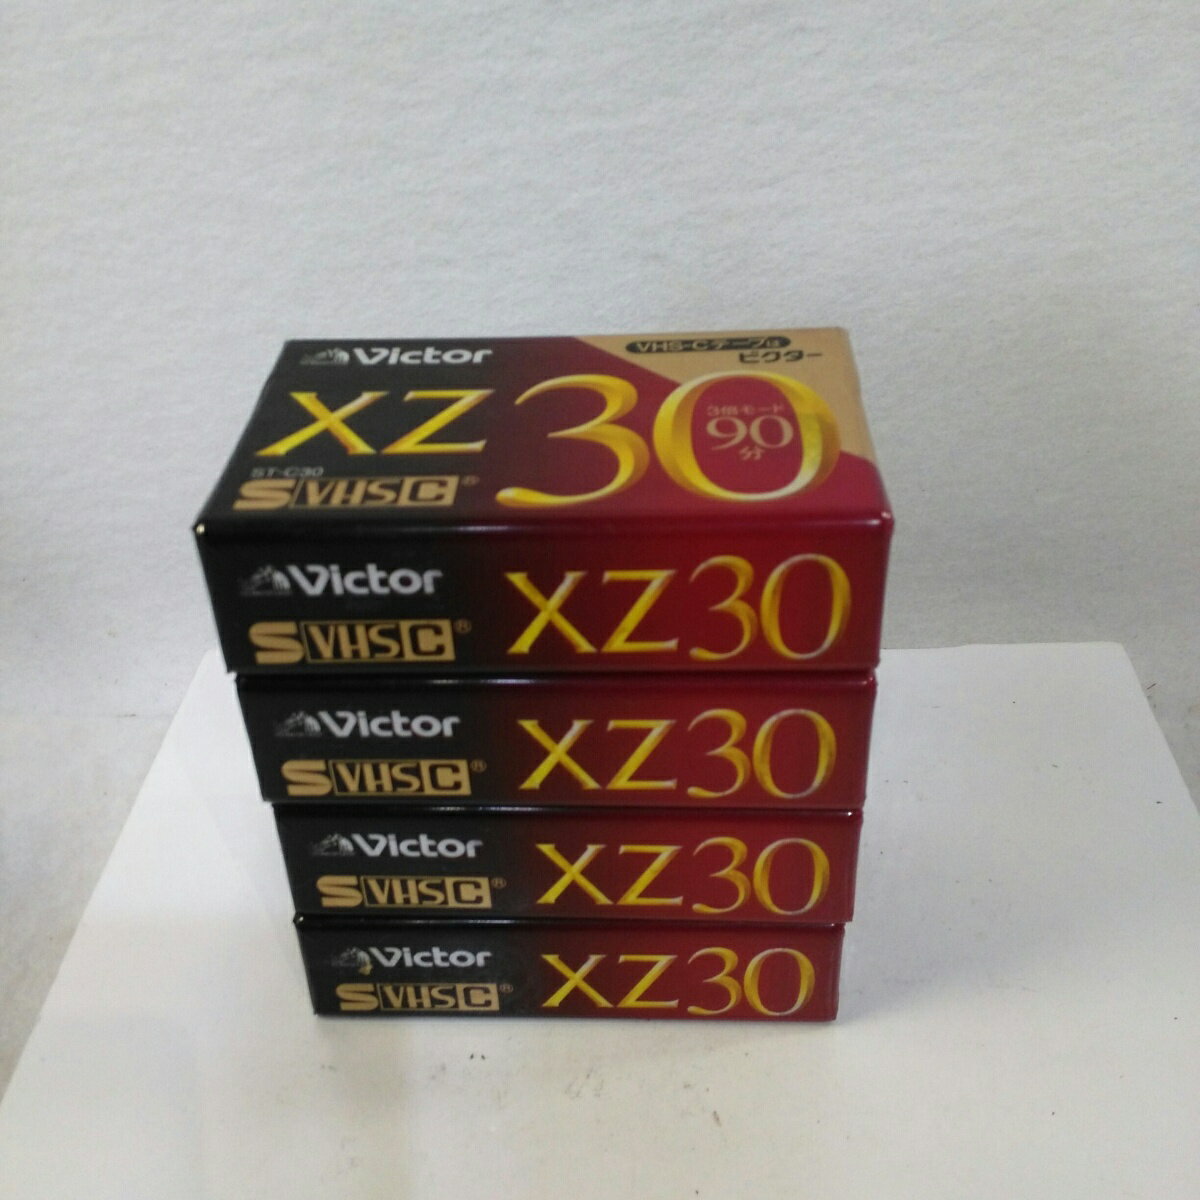 【未使用品】ビクター 30分 S-VHS-C ビデオテープ ST-C30XZD 4本セット【送料無料】【メール便でお送りします】代引き不可